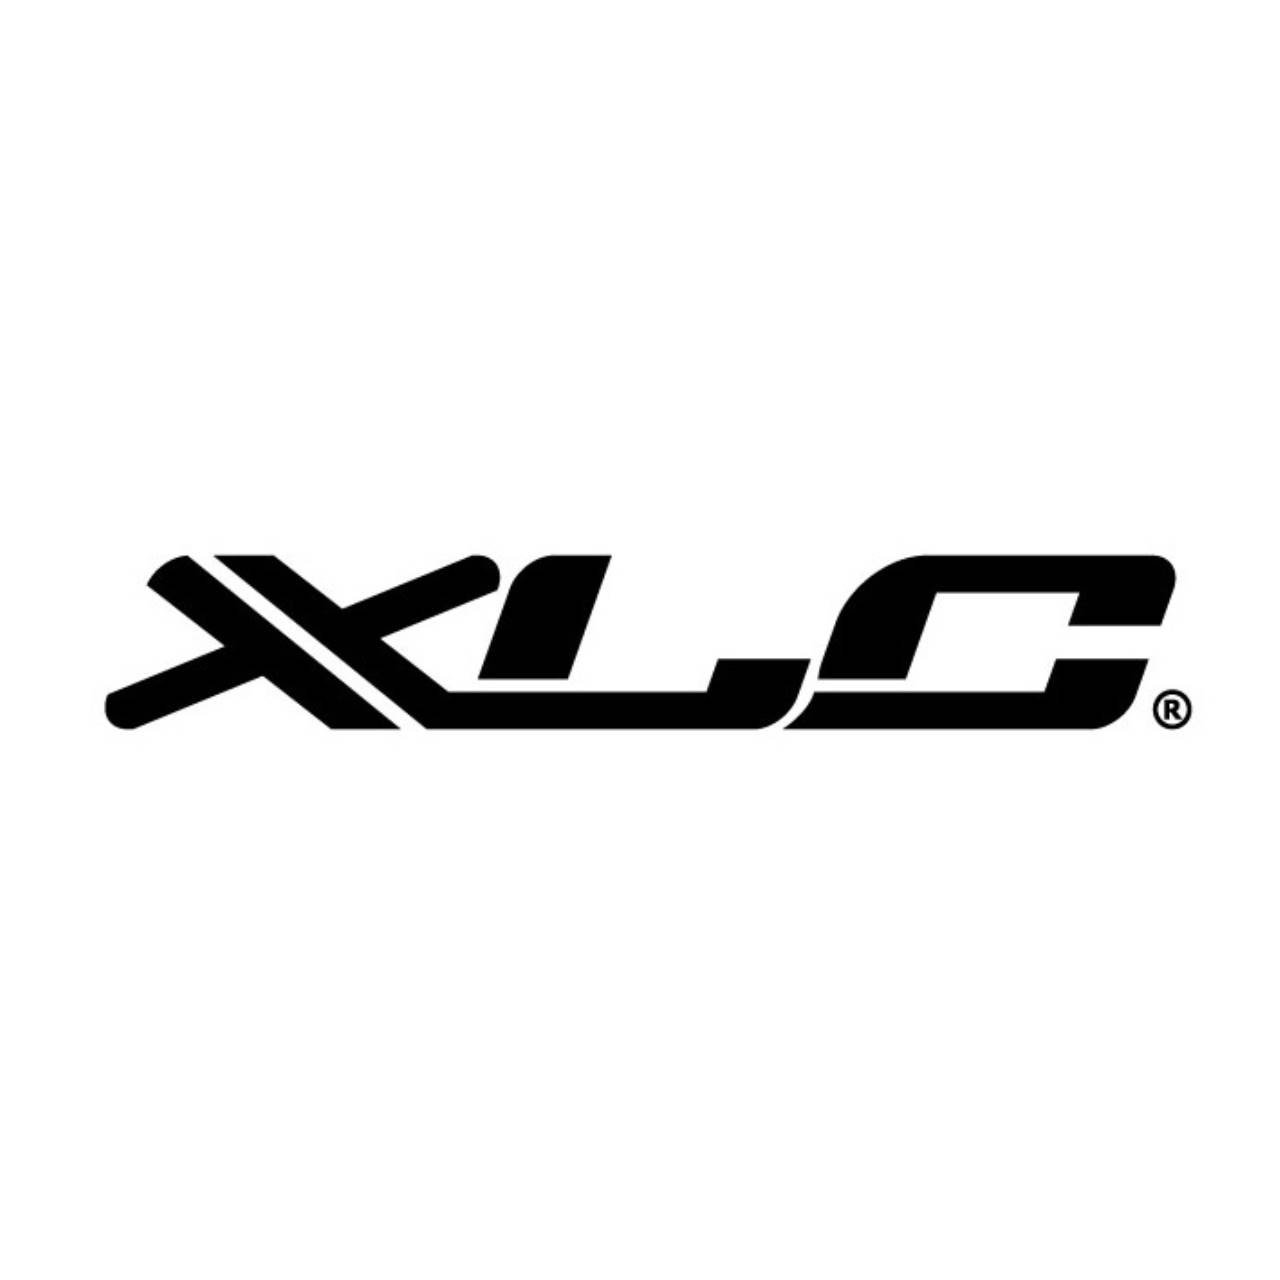 XLC Bremsschuhe für Magura HS11,12,22,24,33,66